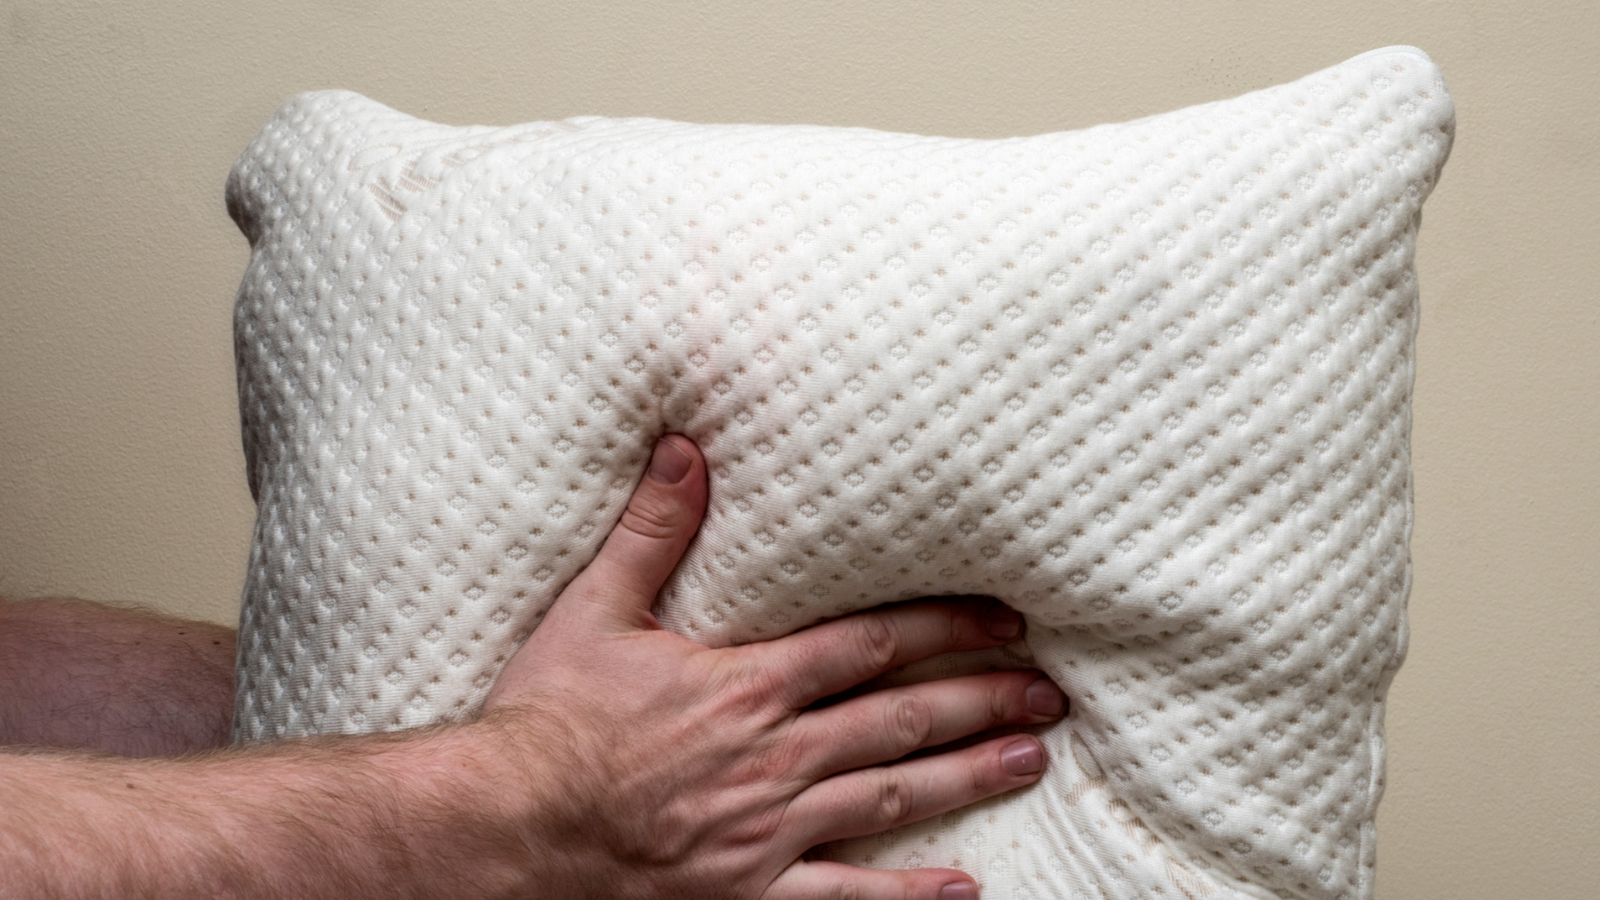 best soft memory foam pillow